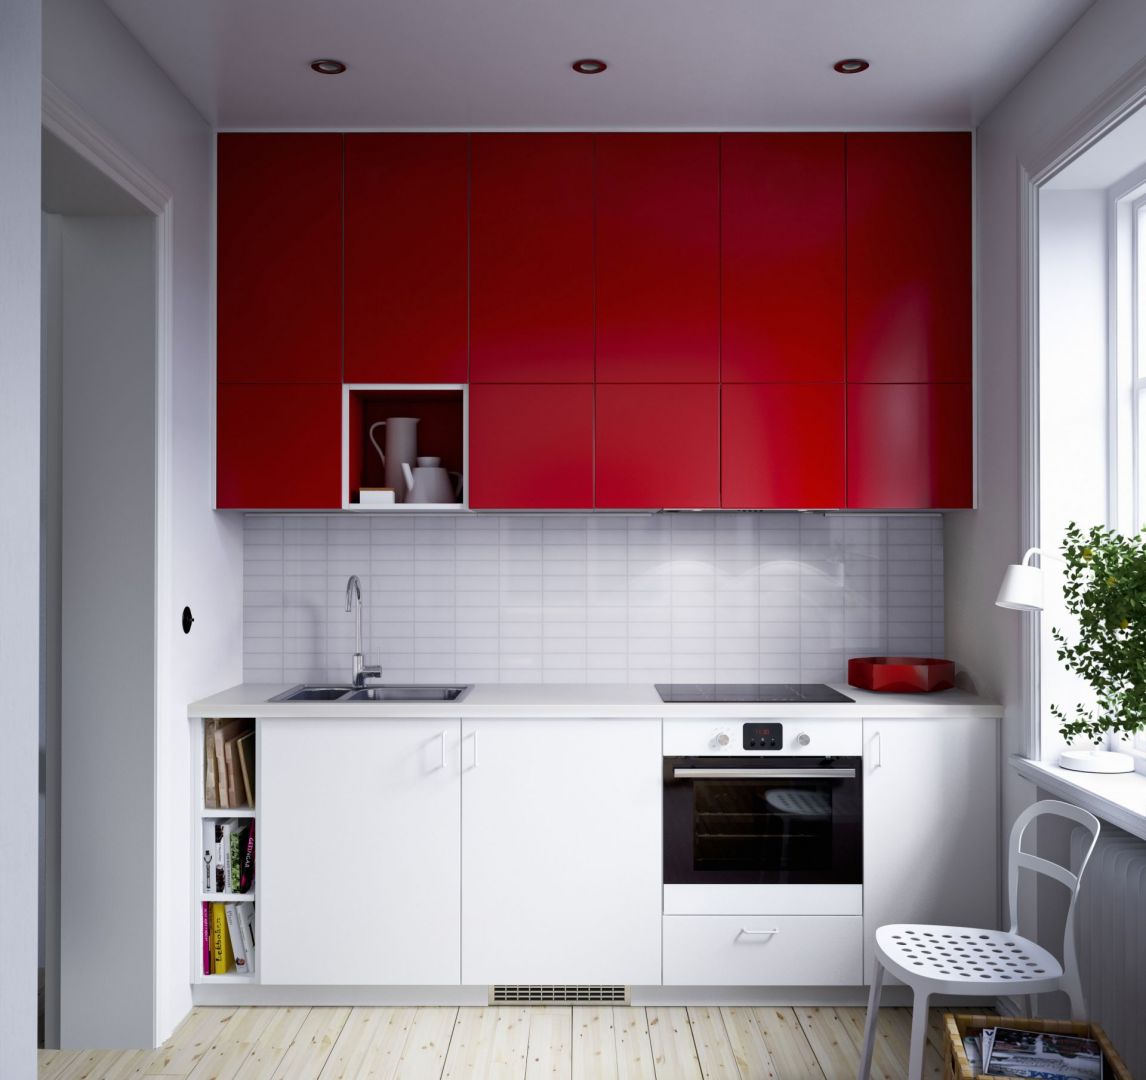 Niewielka kuchnia z energetycznym efektem. Wysoka górna zabudowa w czerwonym kolorze doskonale współgra z bielą, która jest na szafkach dolnych. Fot IKEA